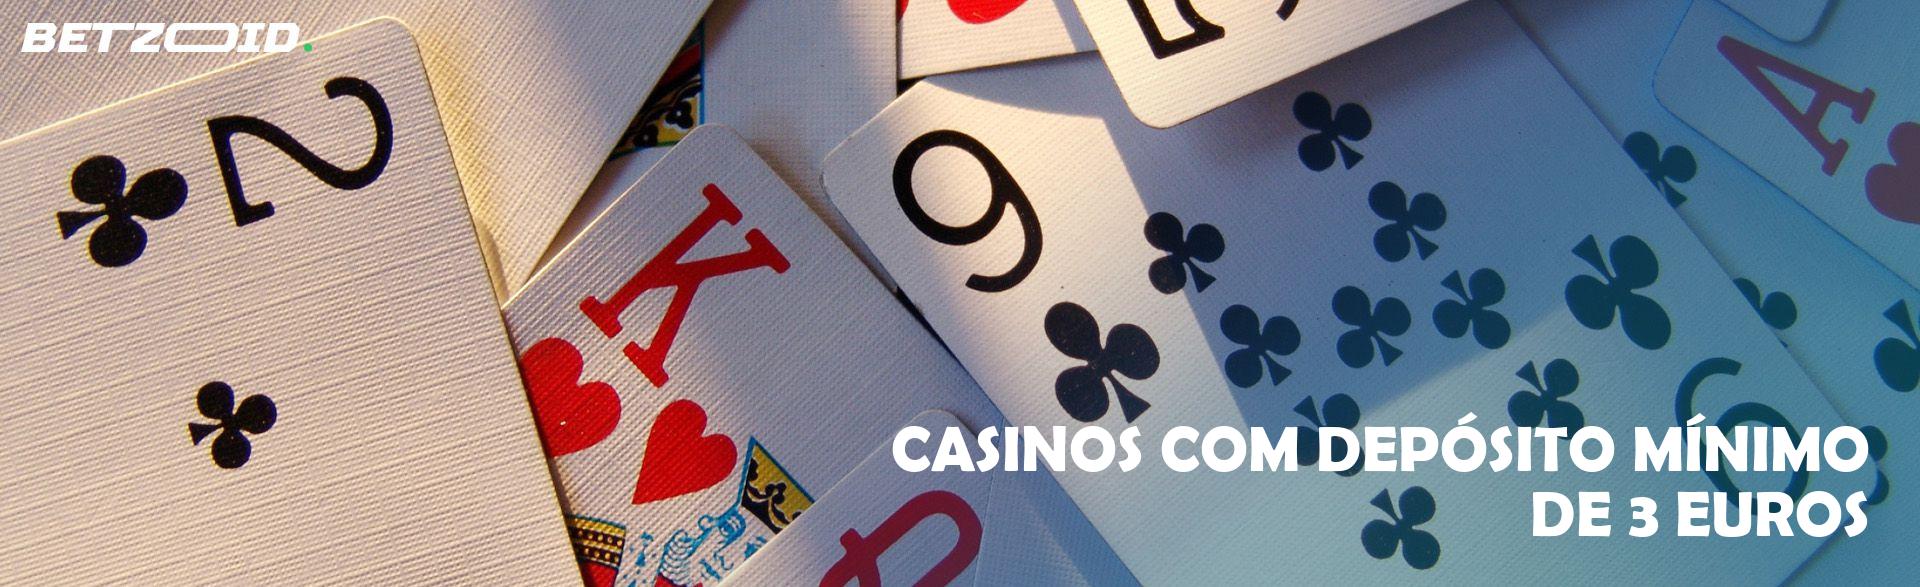 Casinos com Depósito Mínimo de 3 Euros.